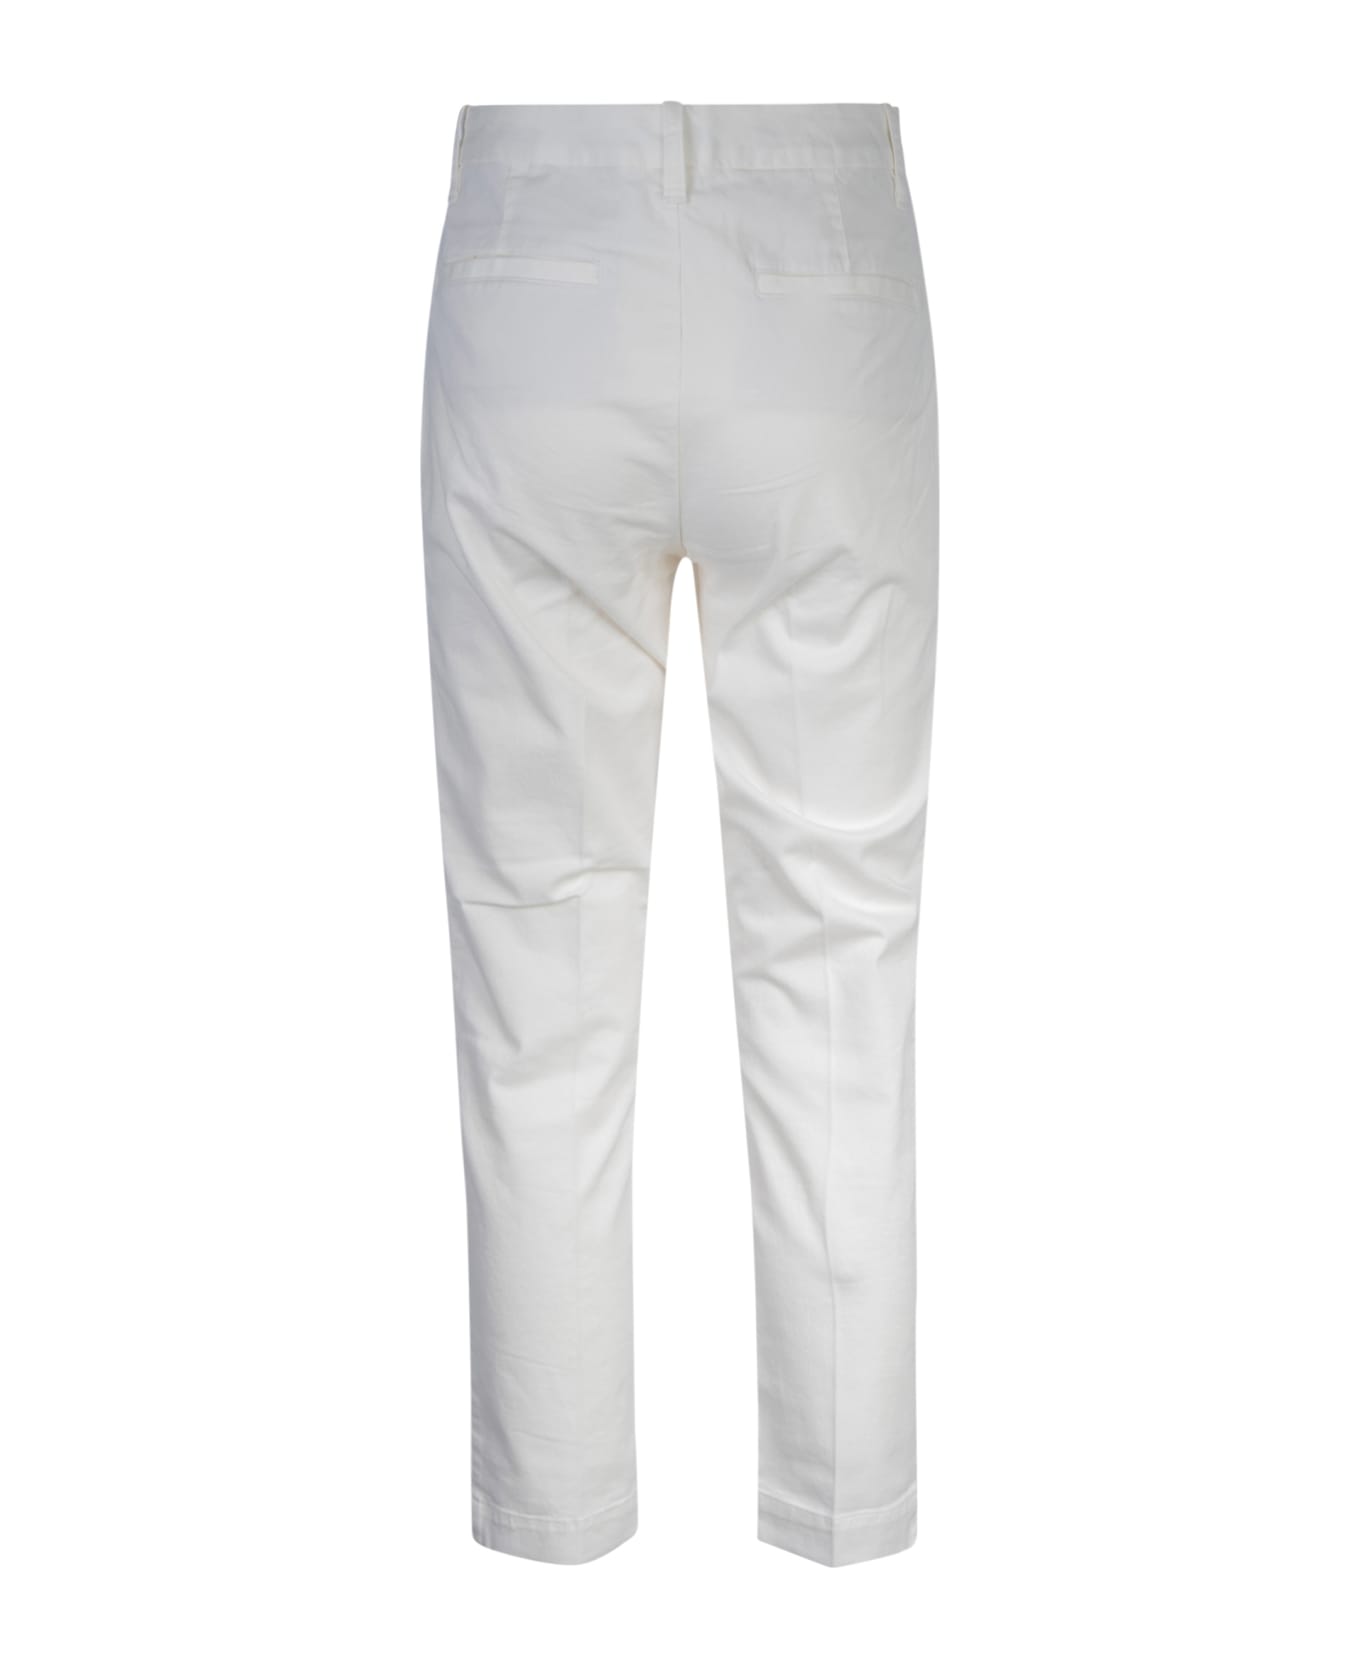 Ralph Lauren Buttoned High Waist Trousers - Warm White